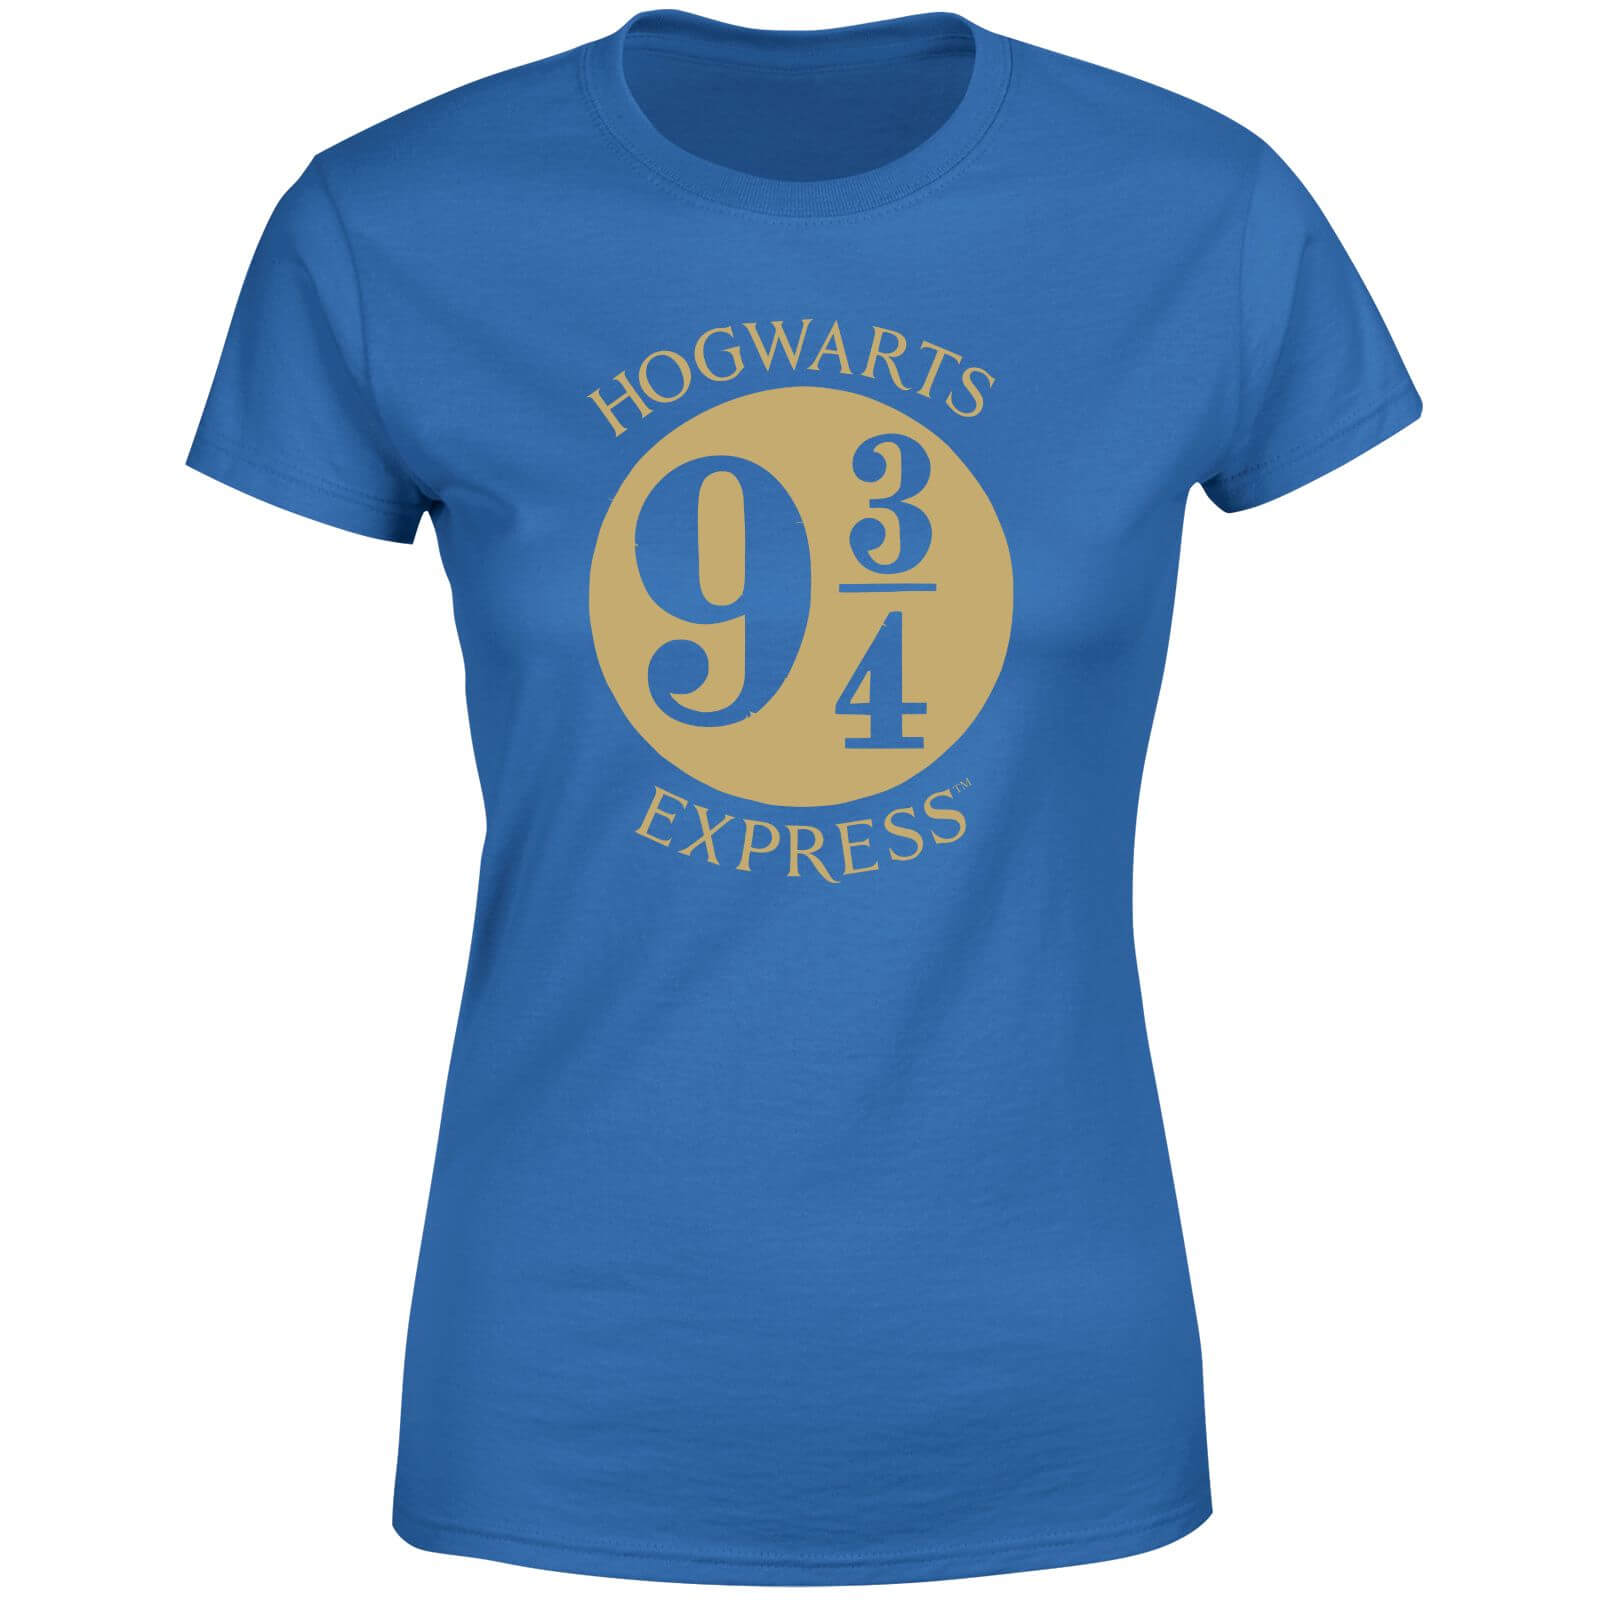 Harry Potter Platform Women's T-Shirt - Blue - XS - Blue